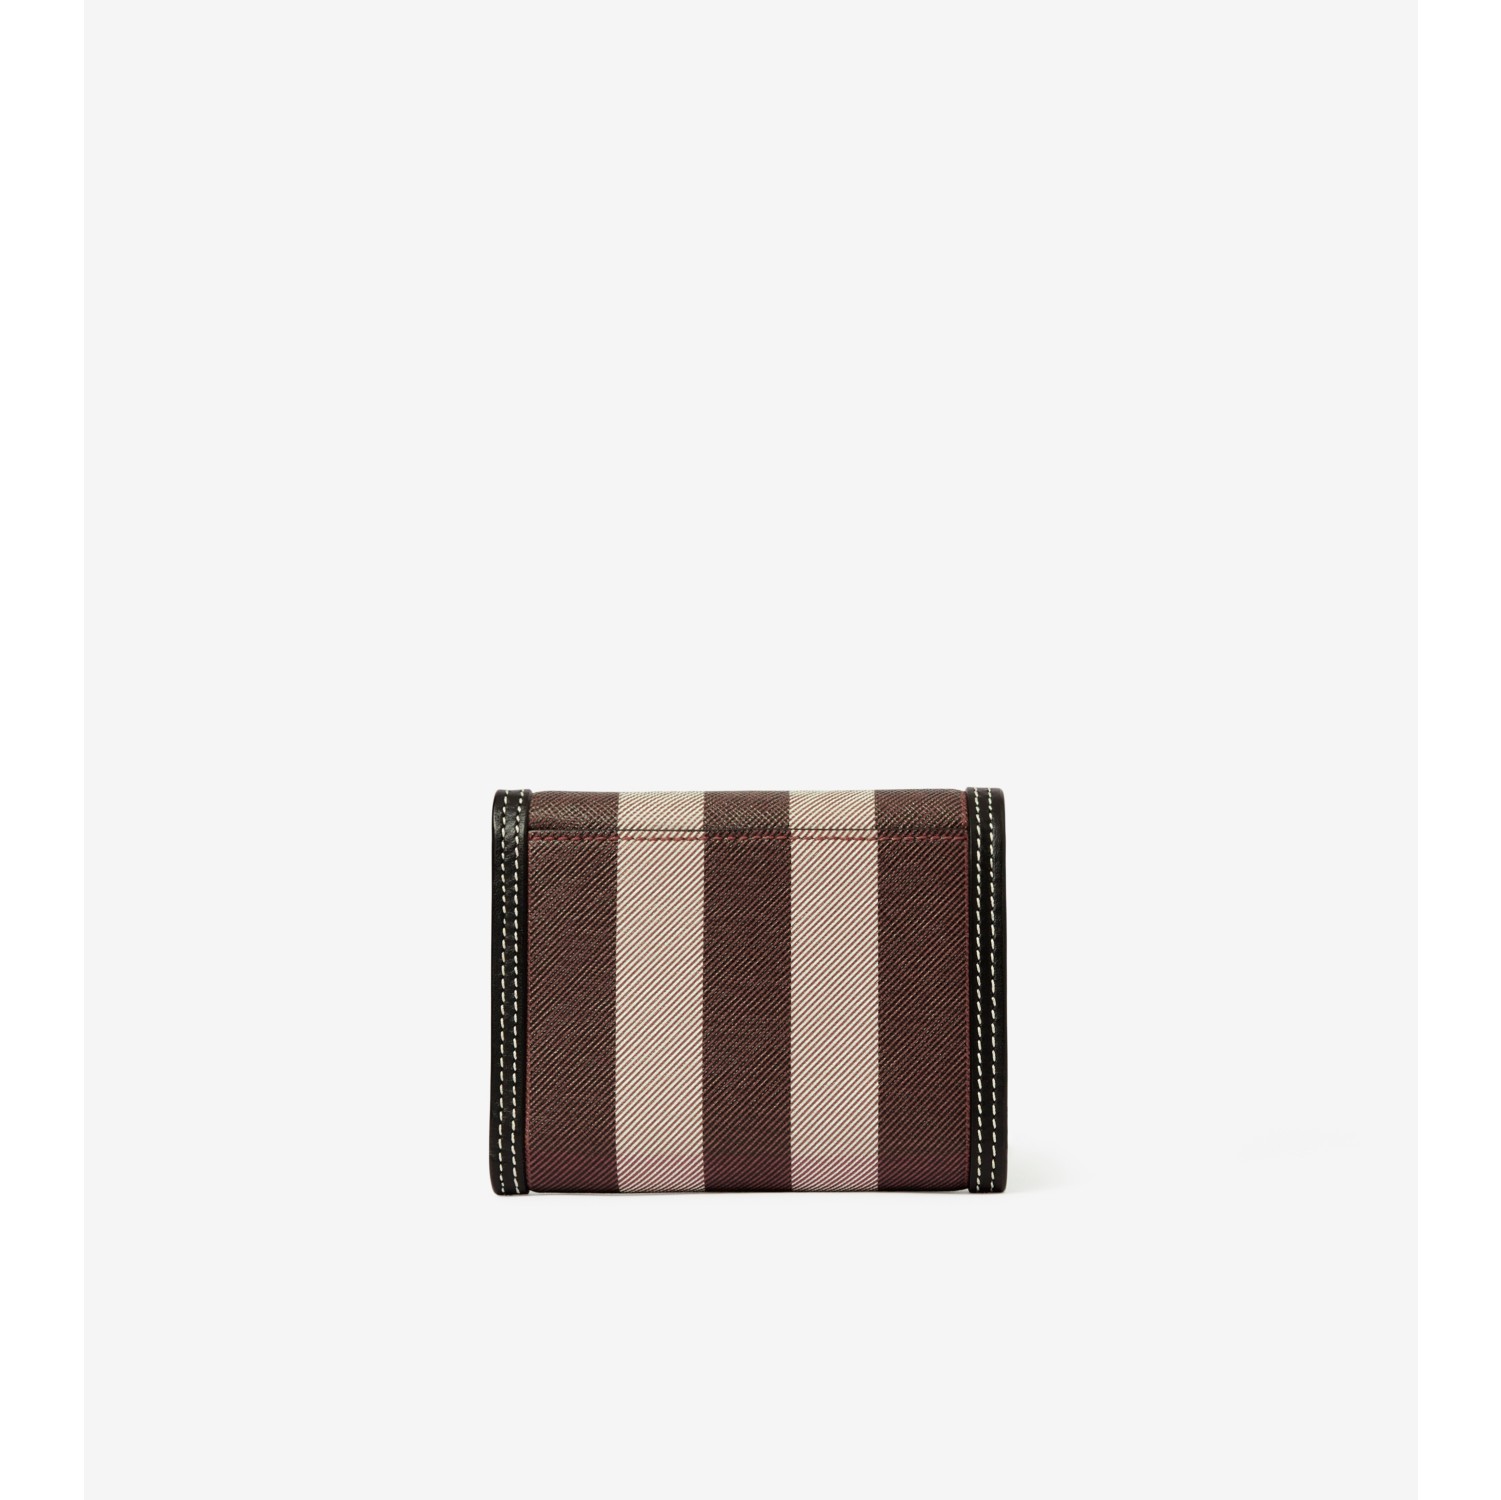 Dark Birch Burberry Wallet in Saffiano Leather